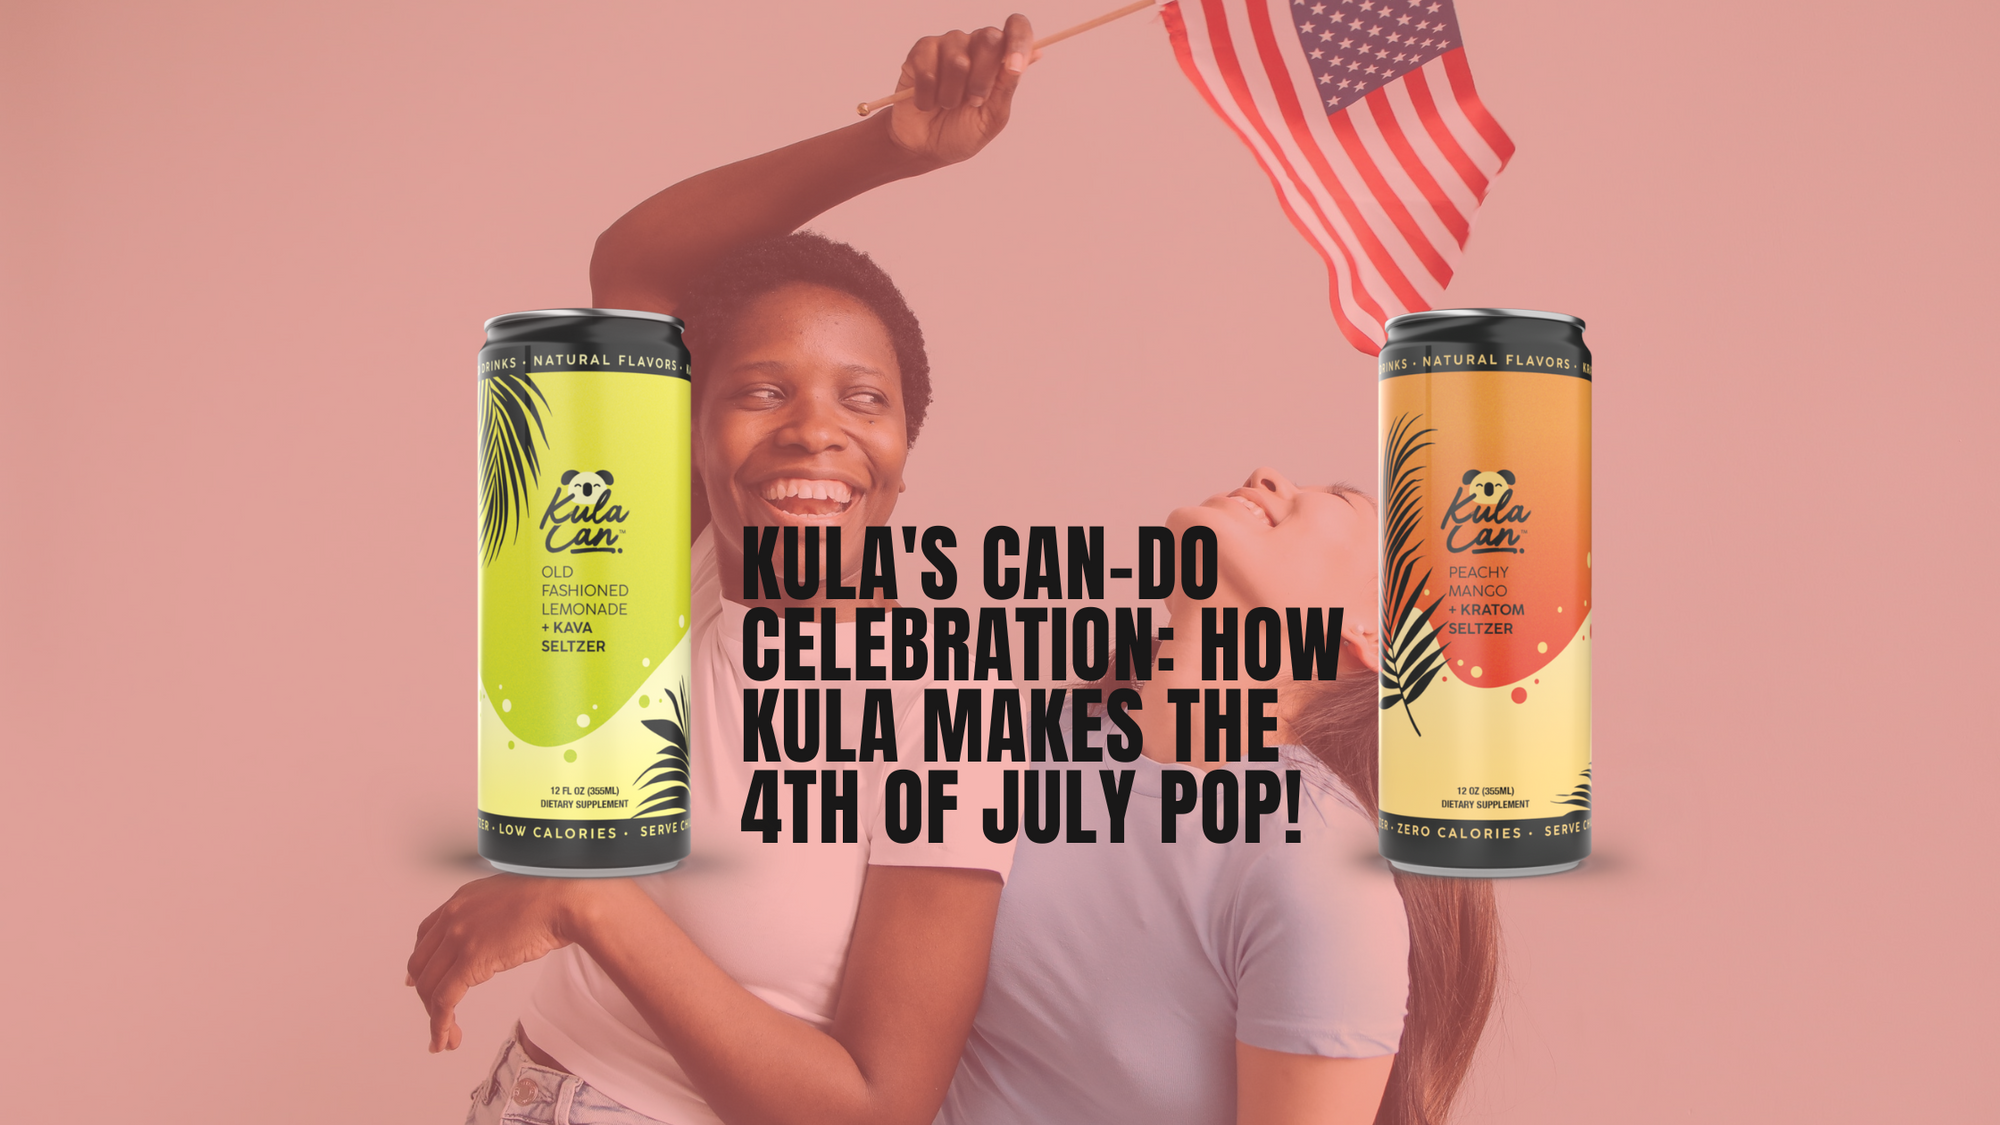 Kula's Can-Do Celebration: How Kula Makes the 4th of July Pop!